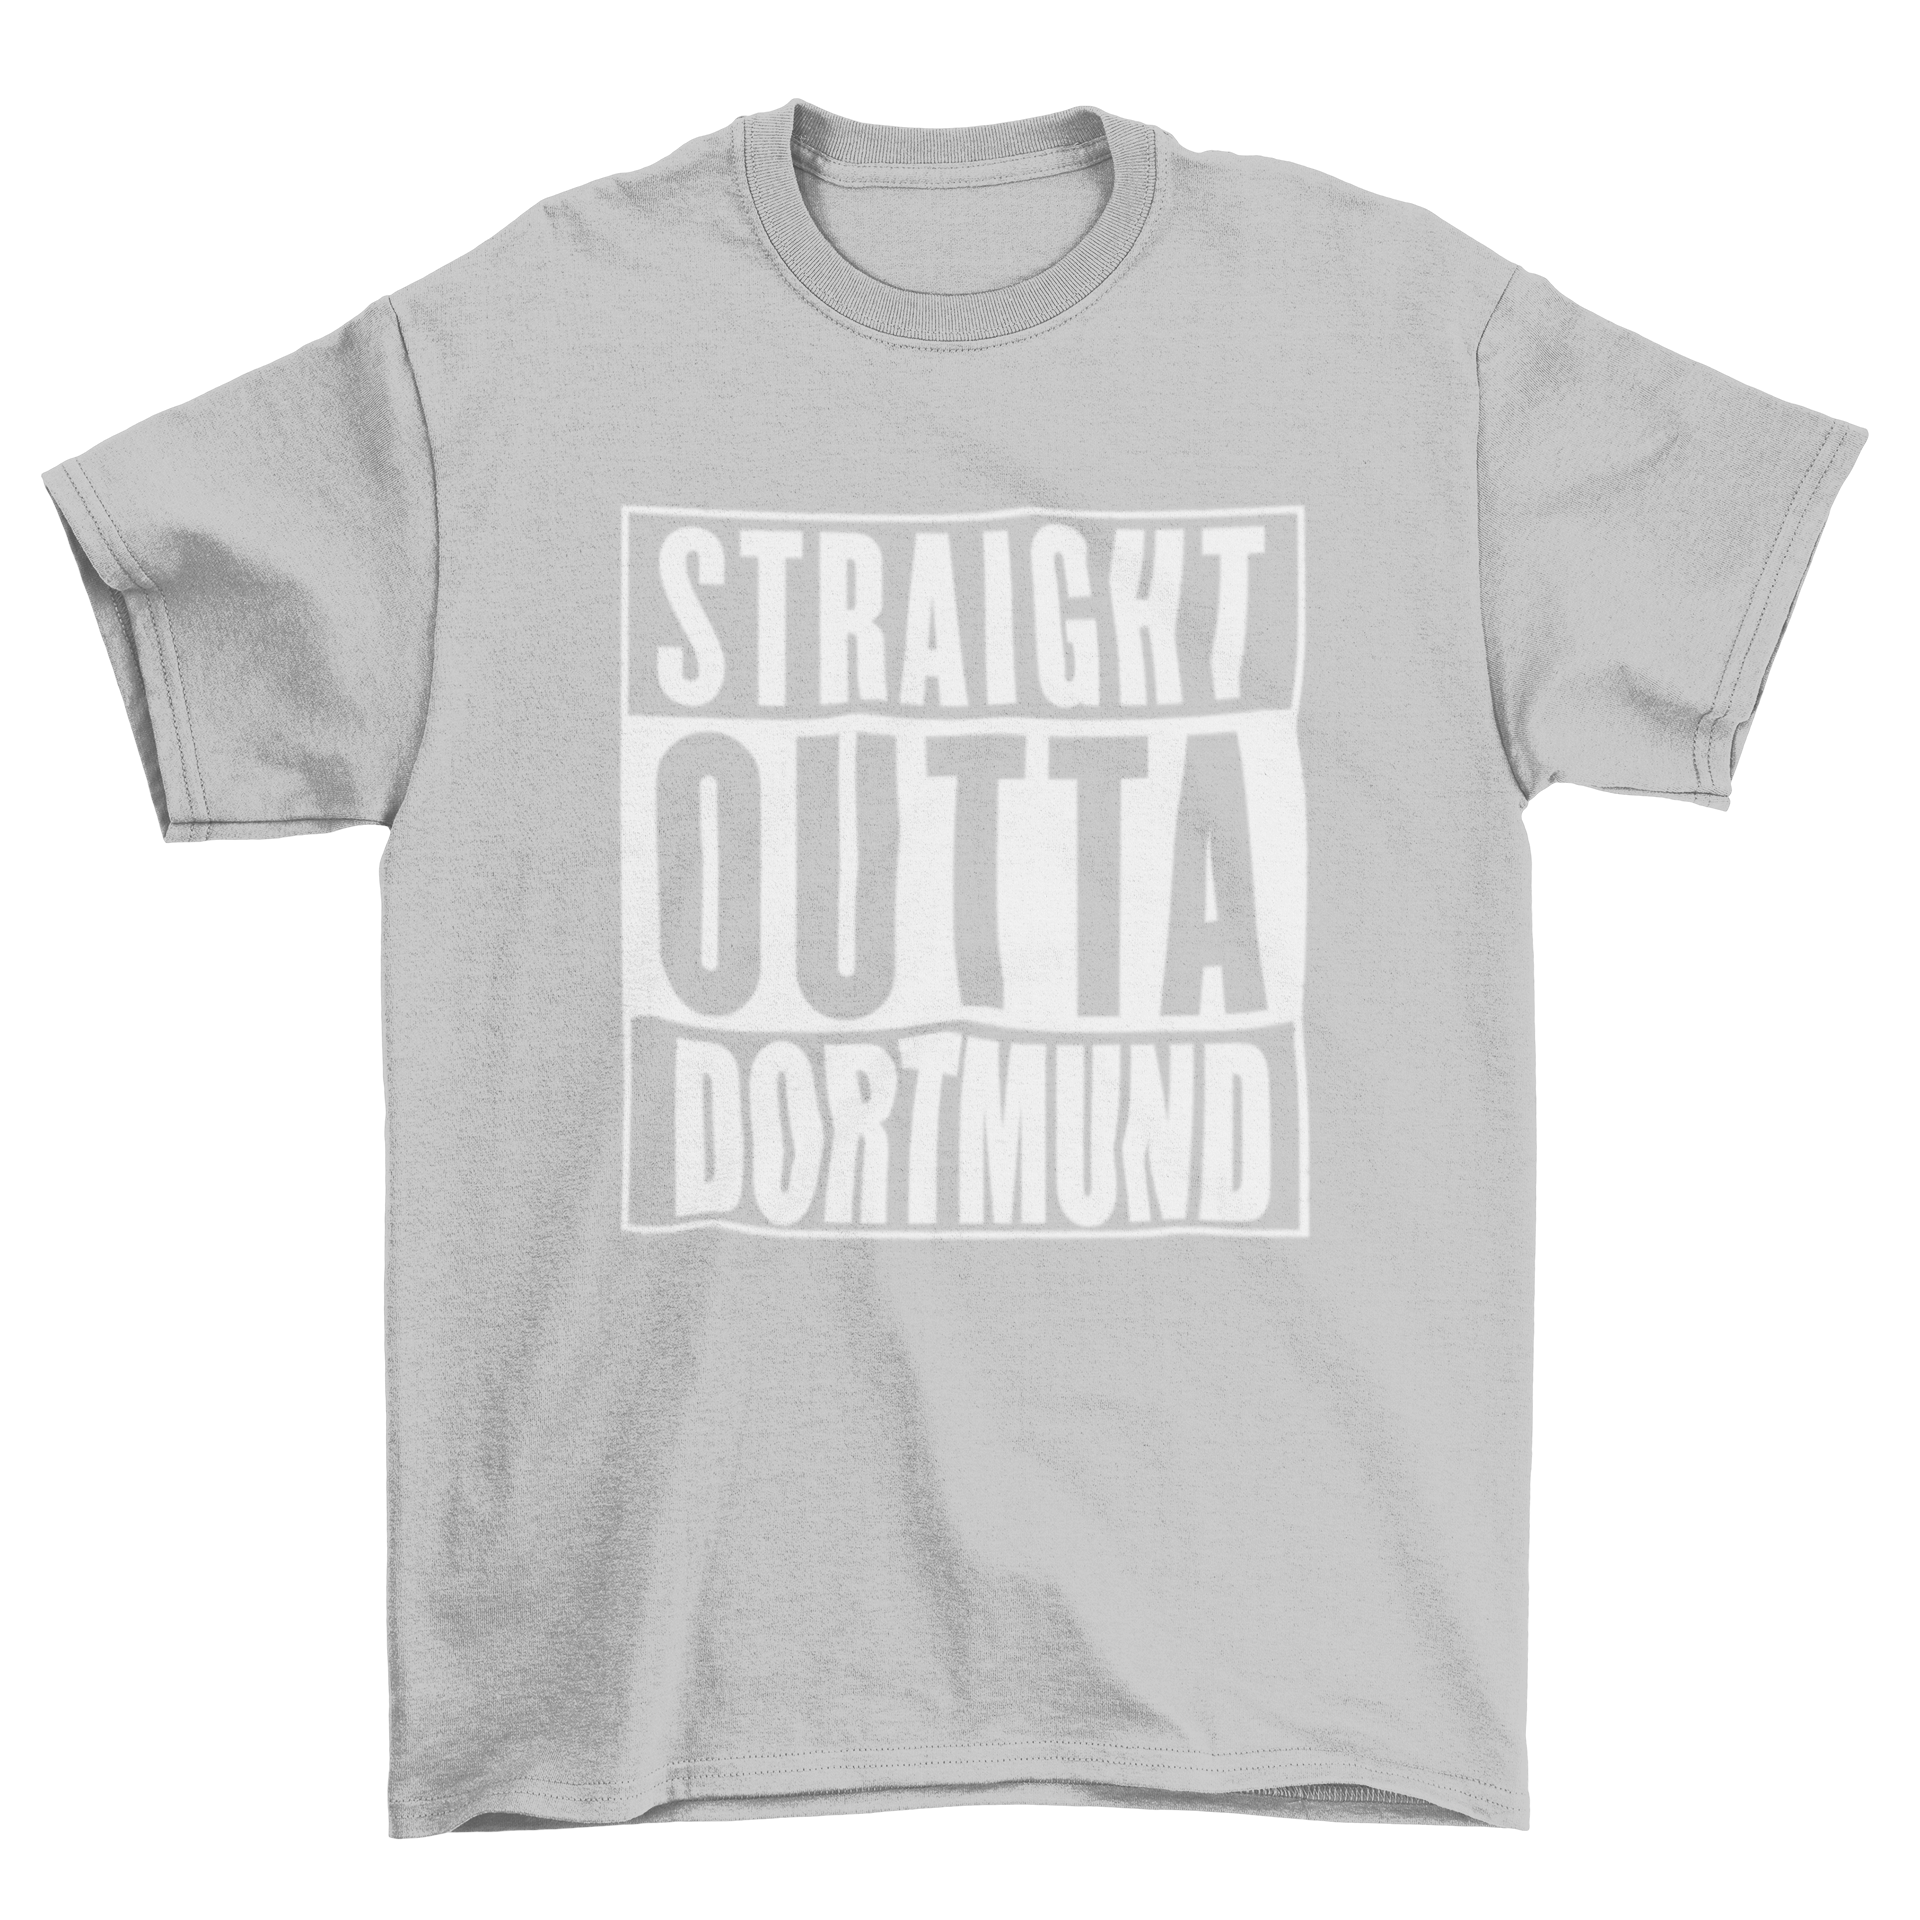 Straight Outta Dortmund T-Shirt